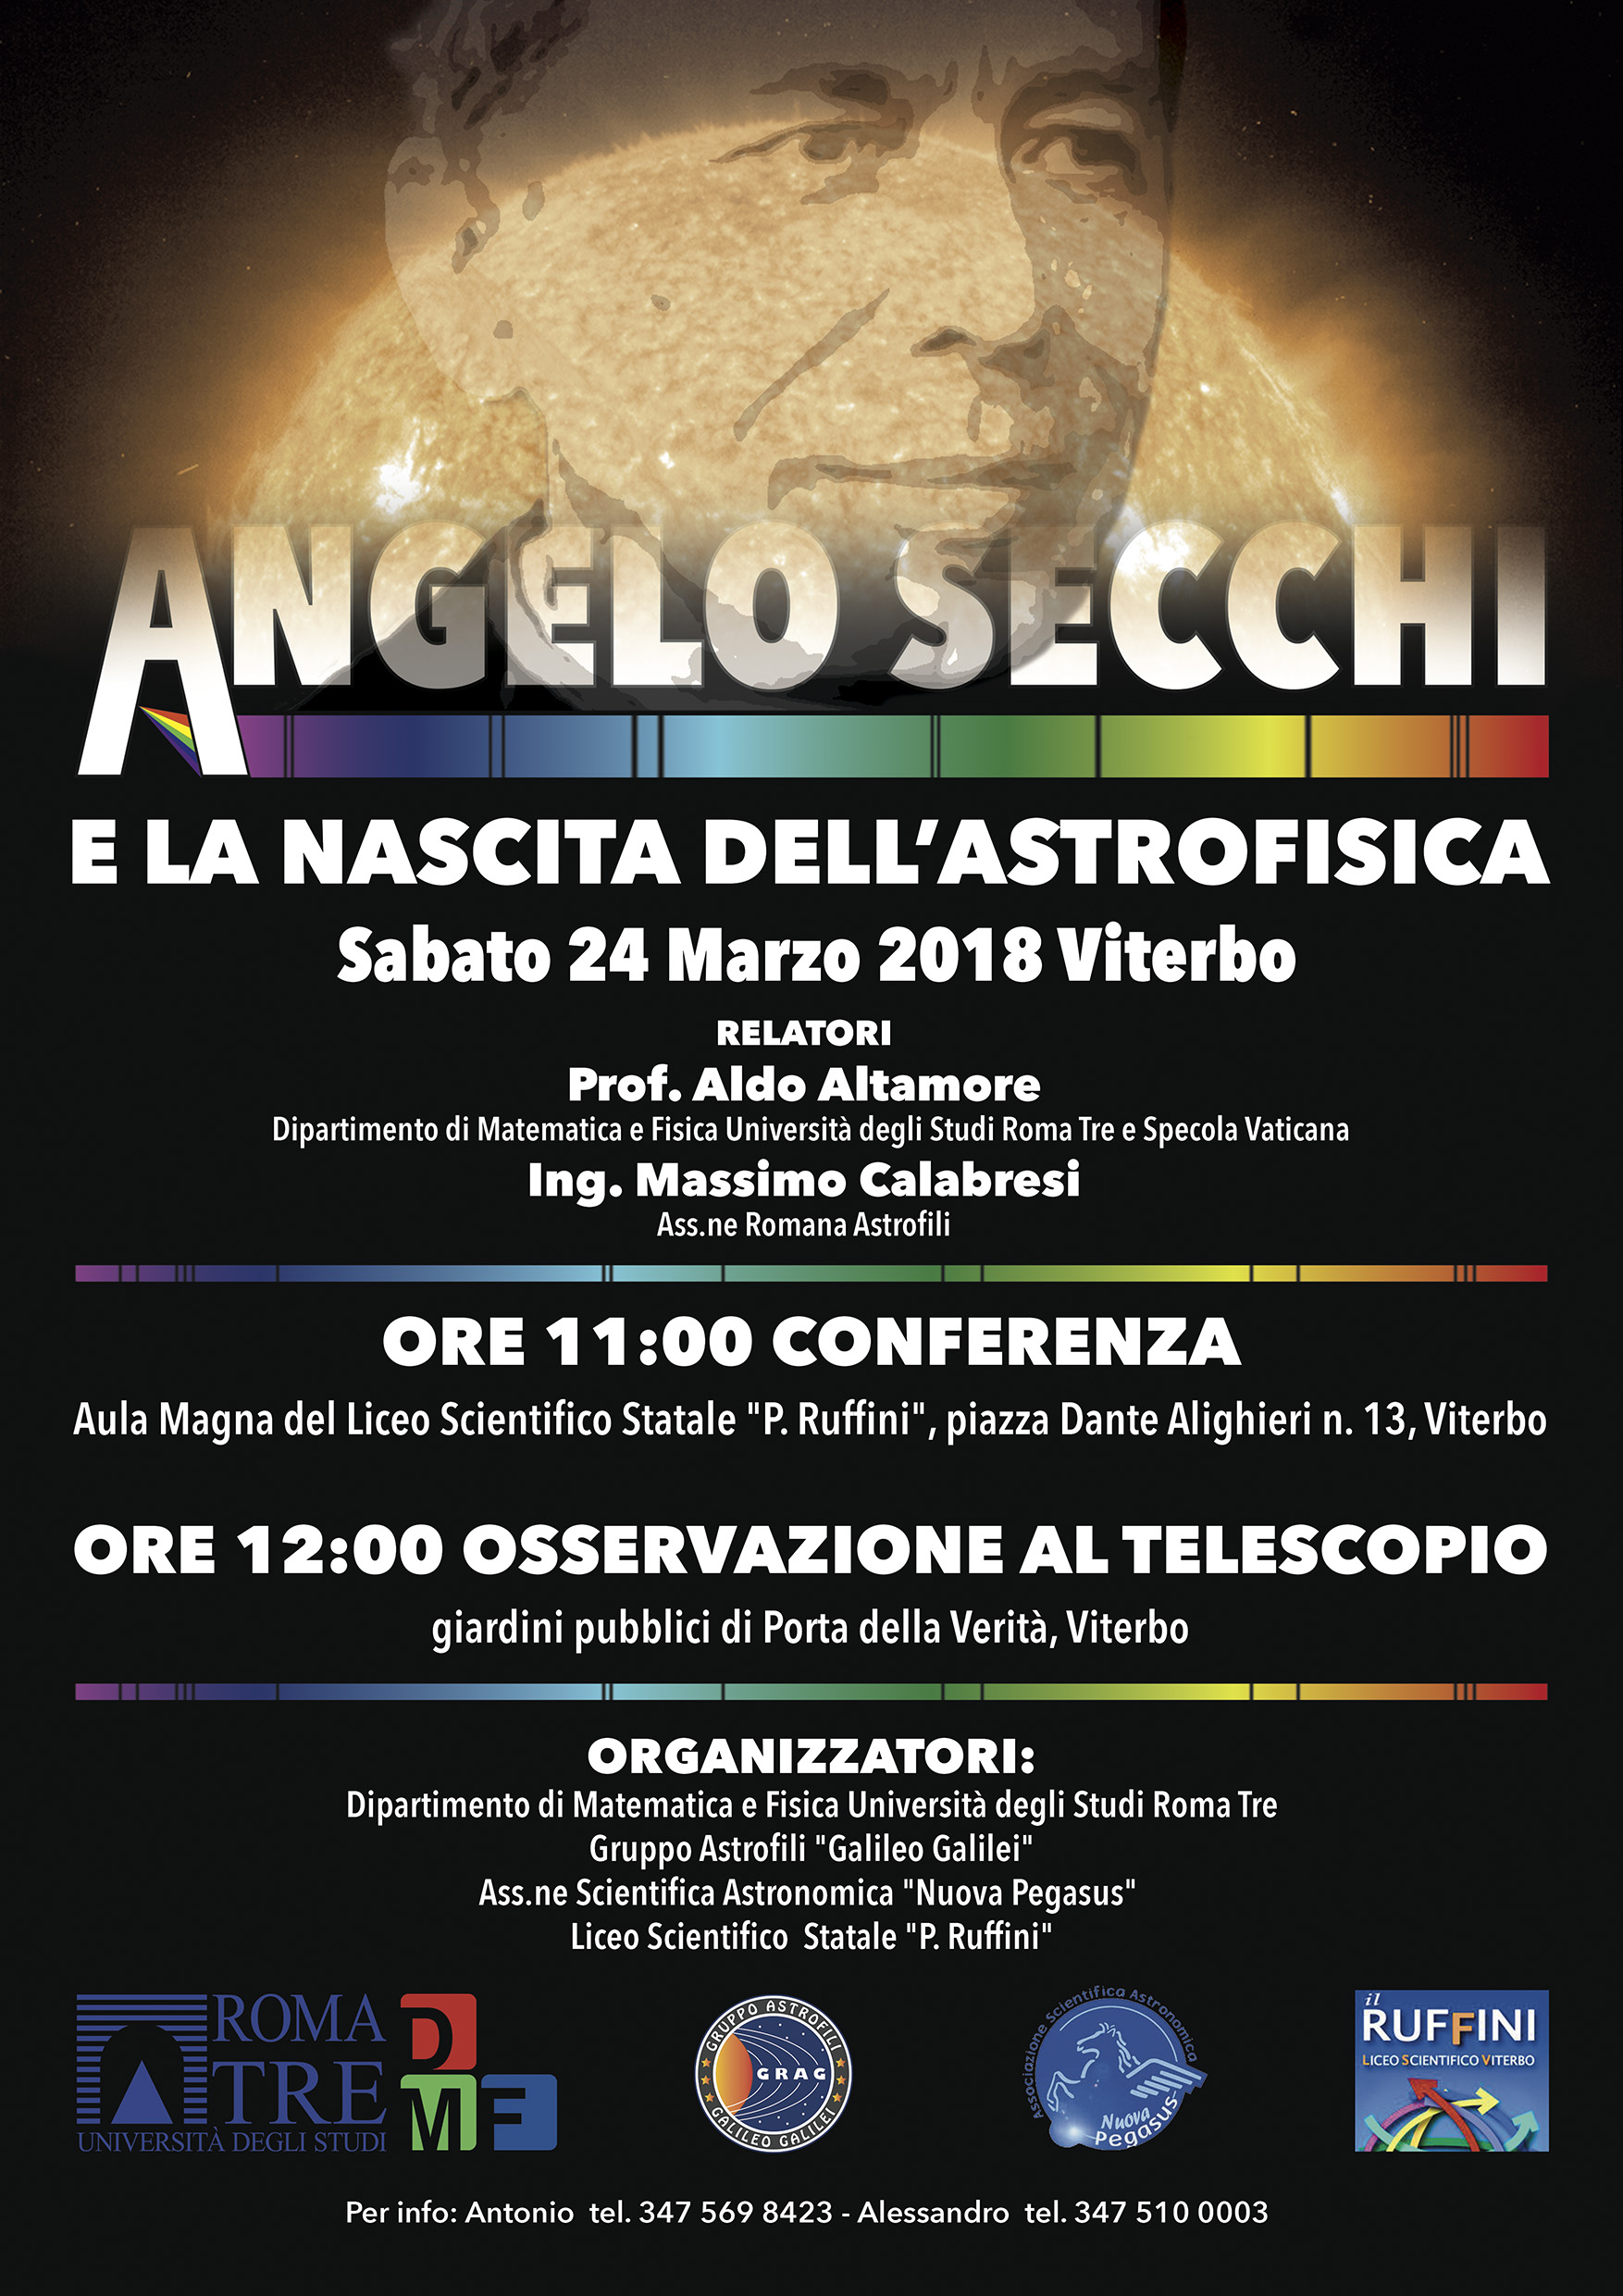 Angelo Secchi e la nascita dell'Astrofisica